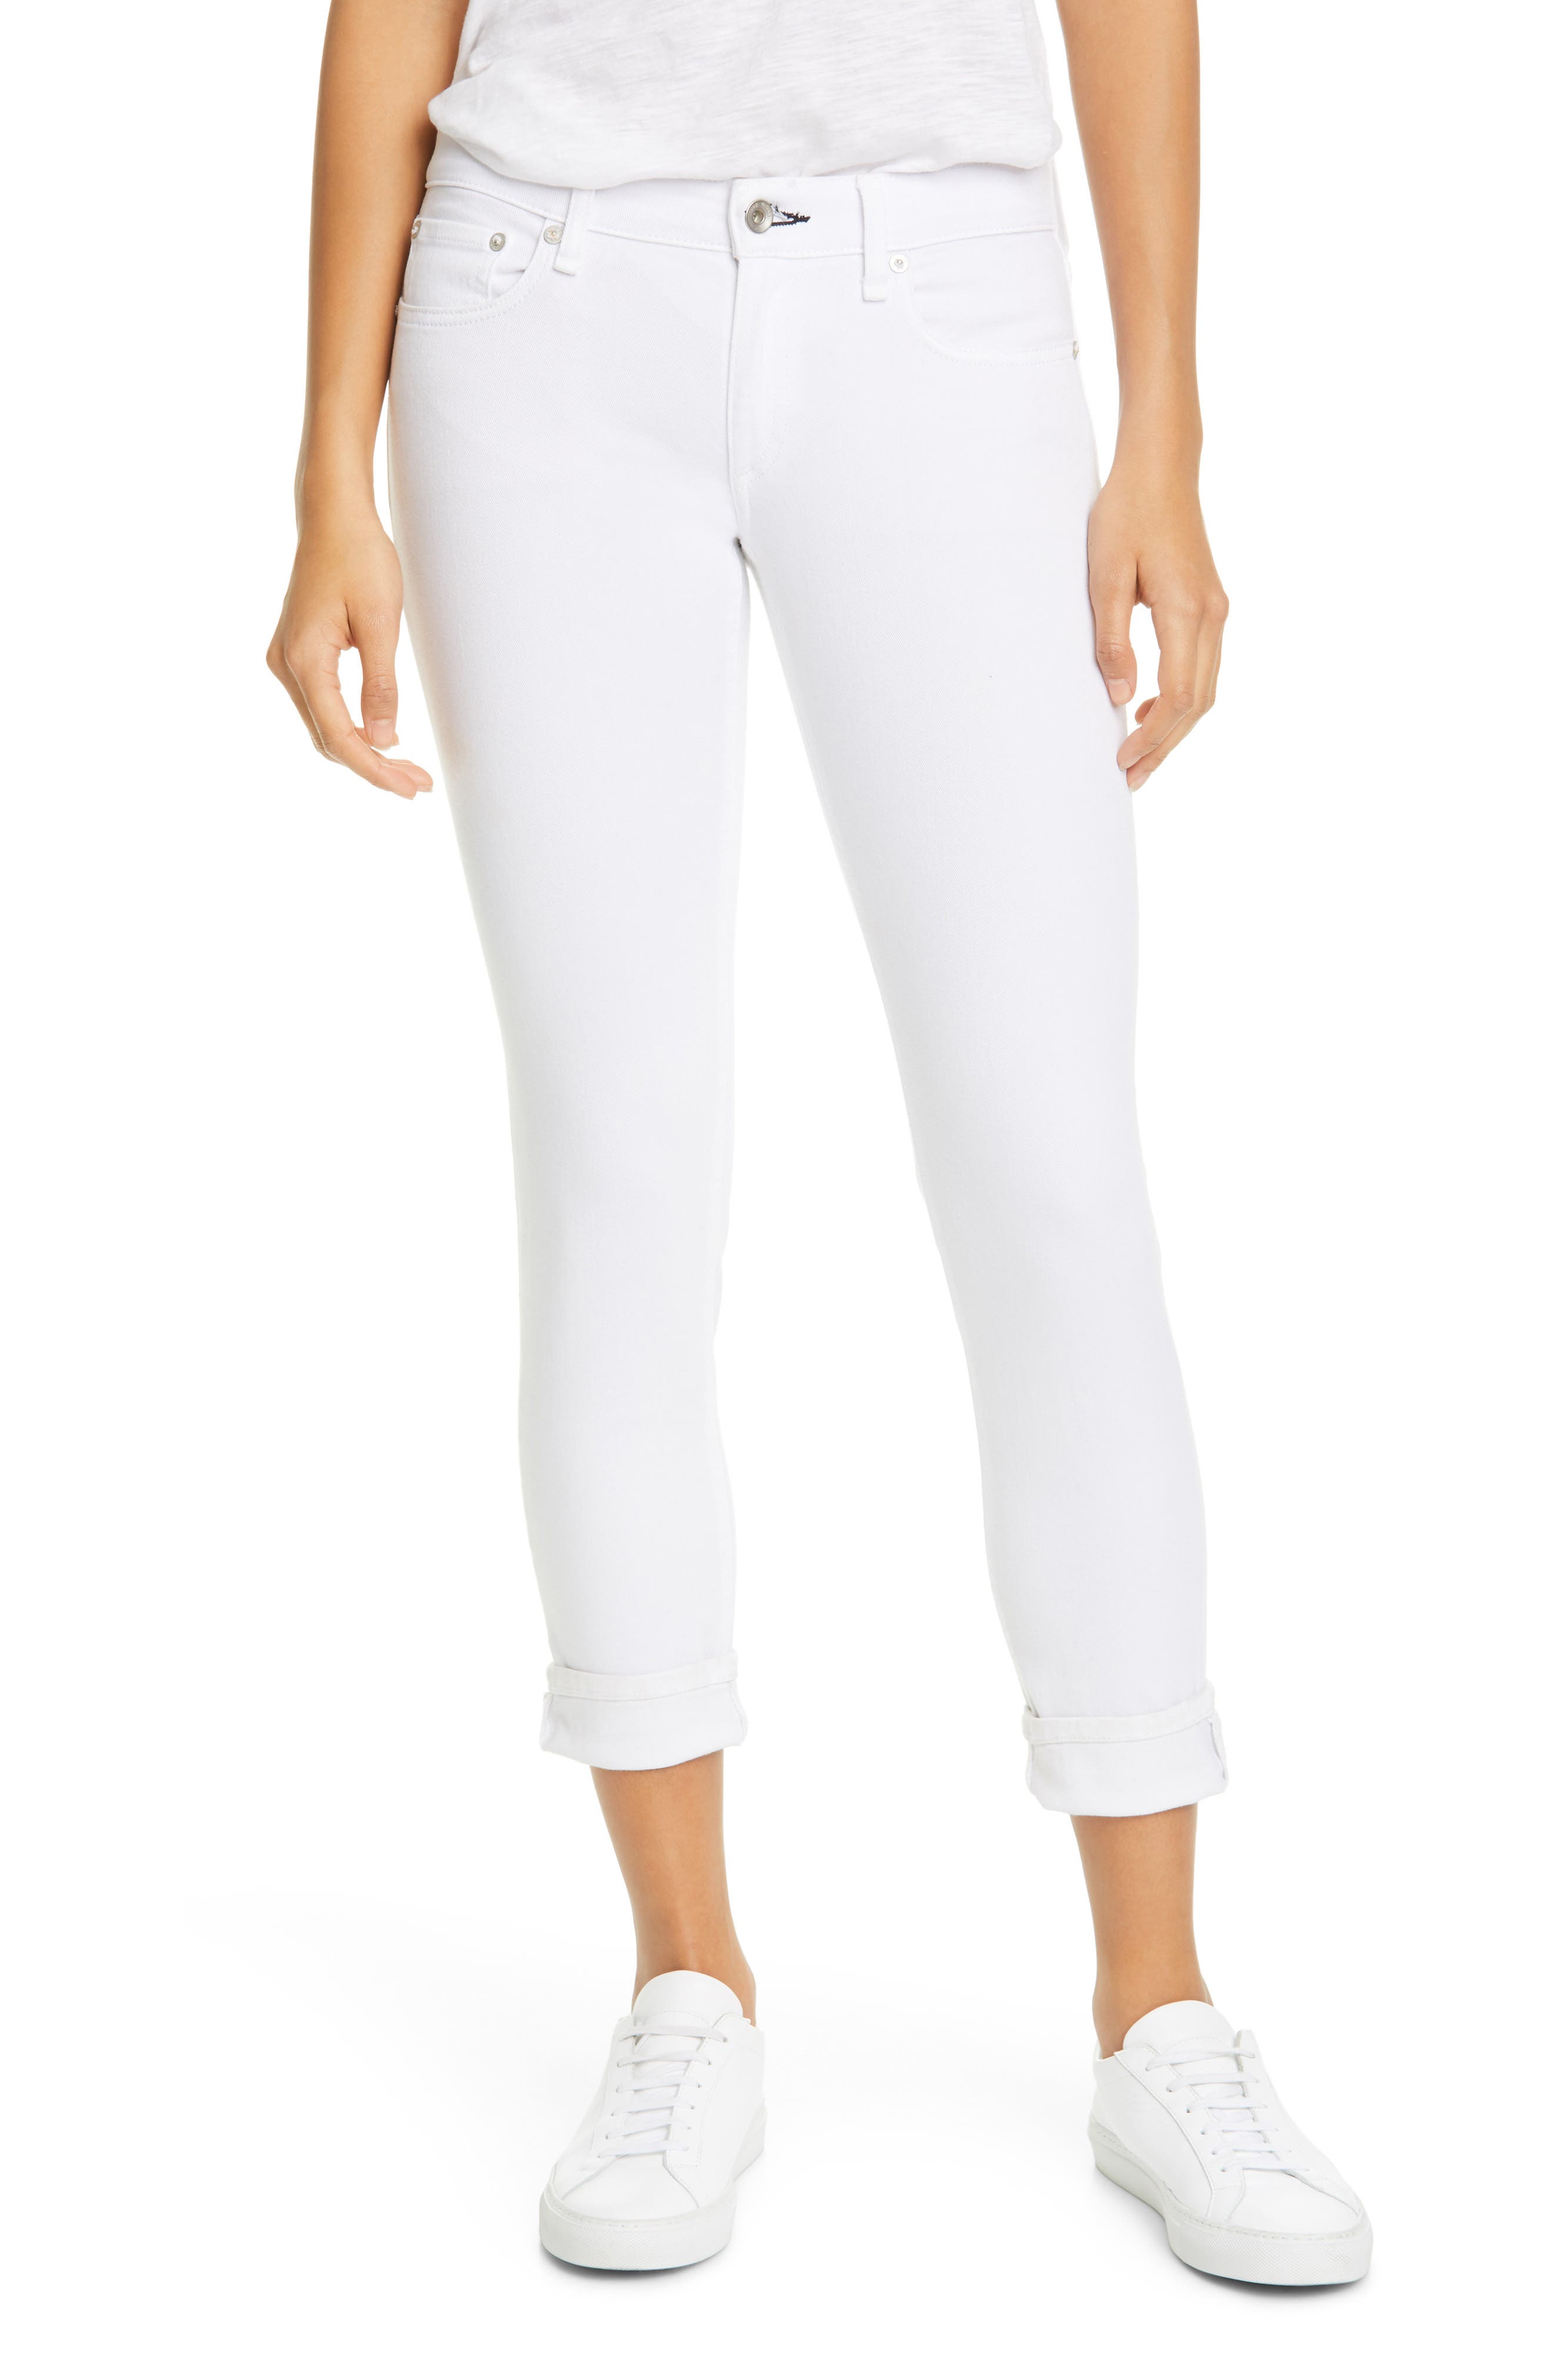 designer white jeans womens